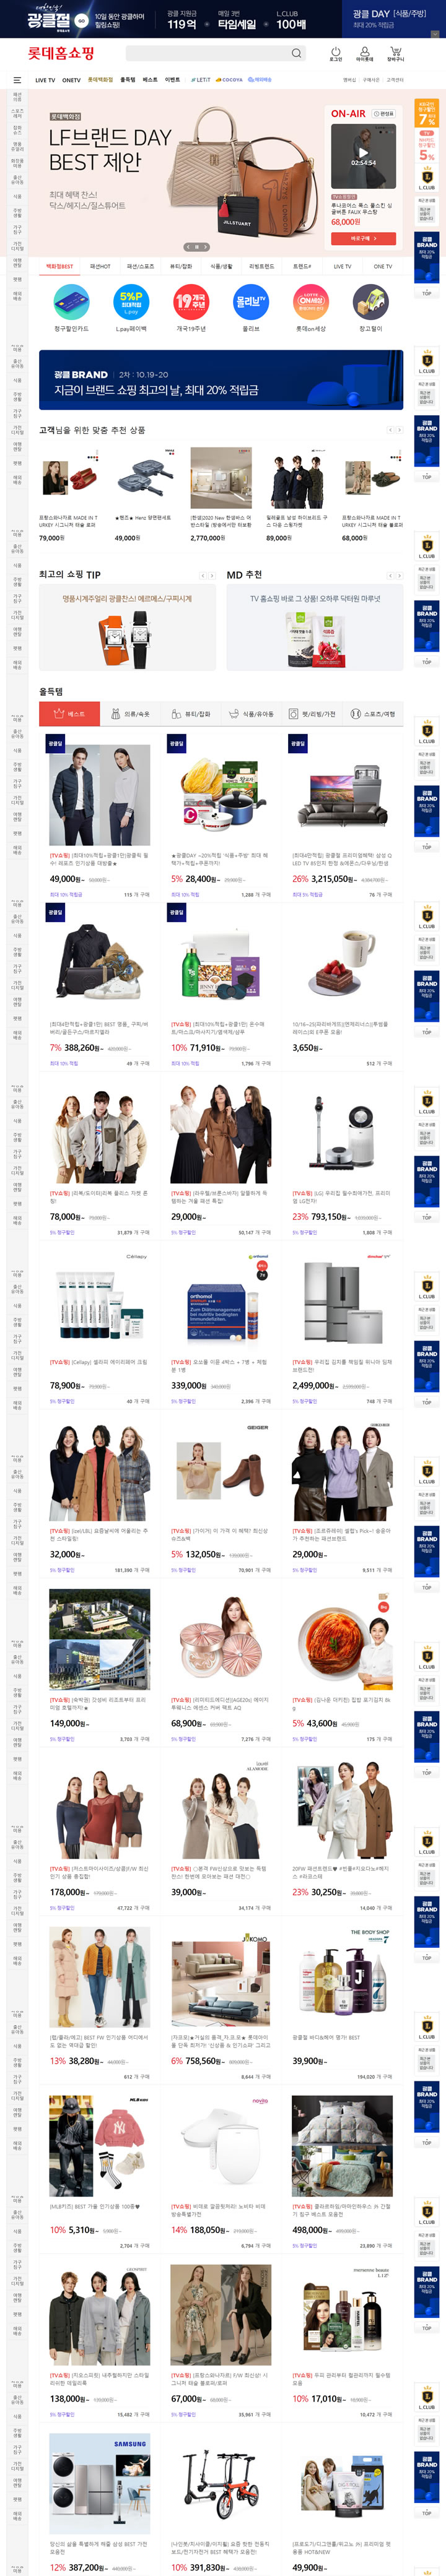 韩国乐天网上商城：Lotte iMall，畅购韩国时尚、美妆和生活品牌